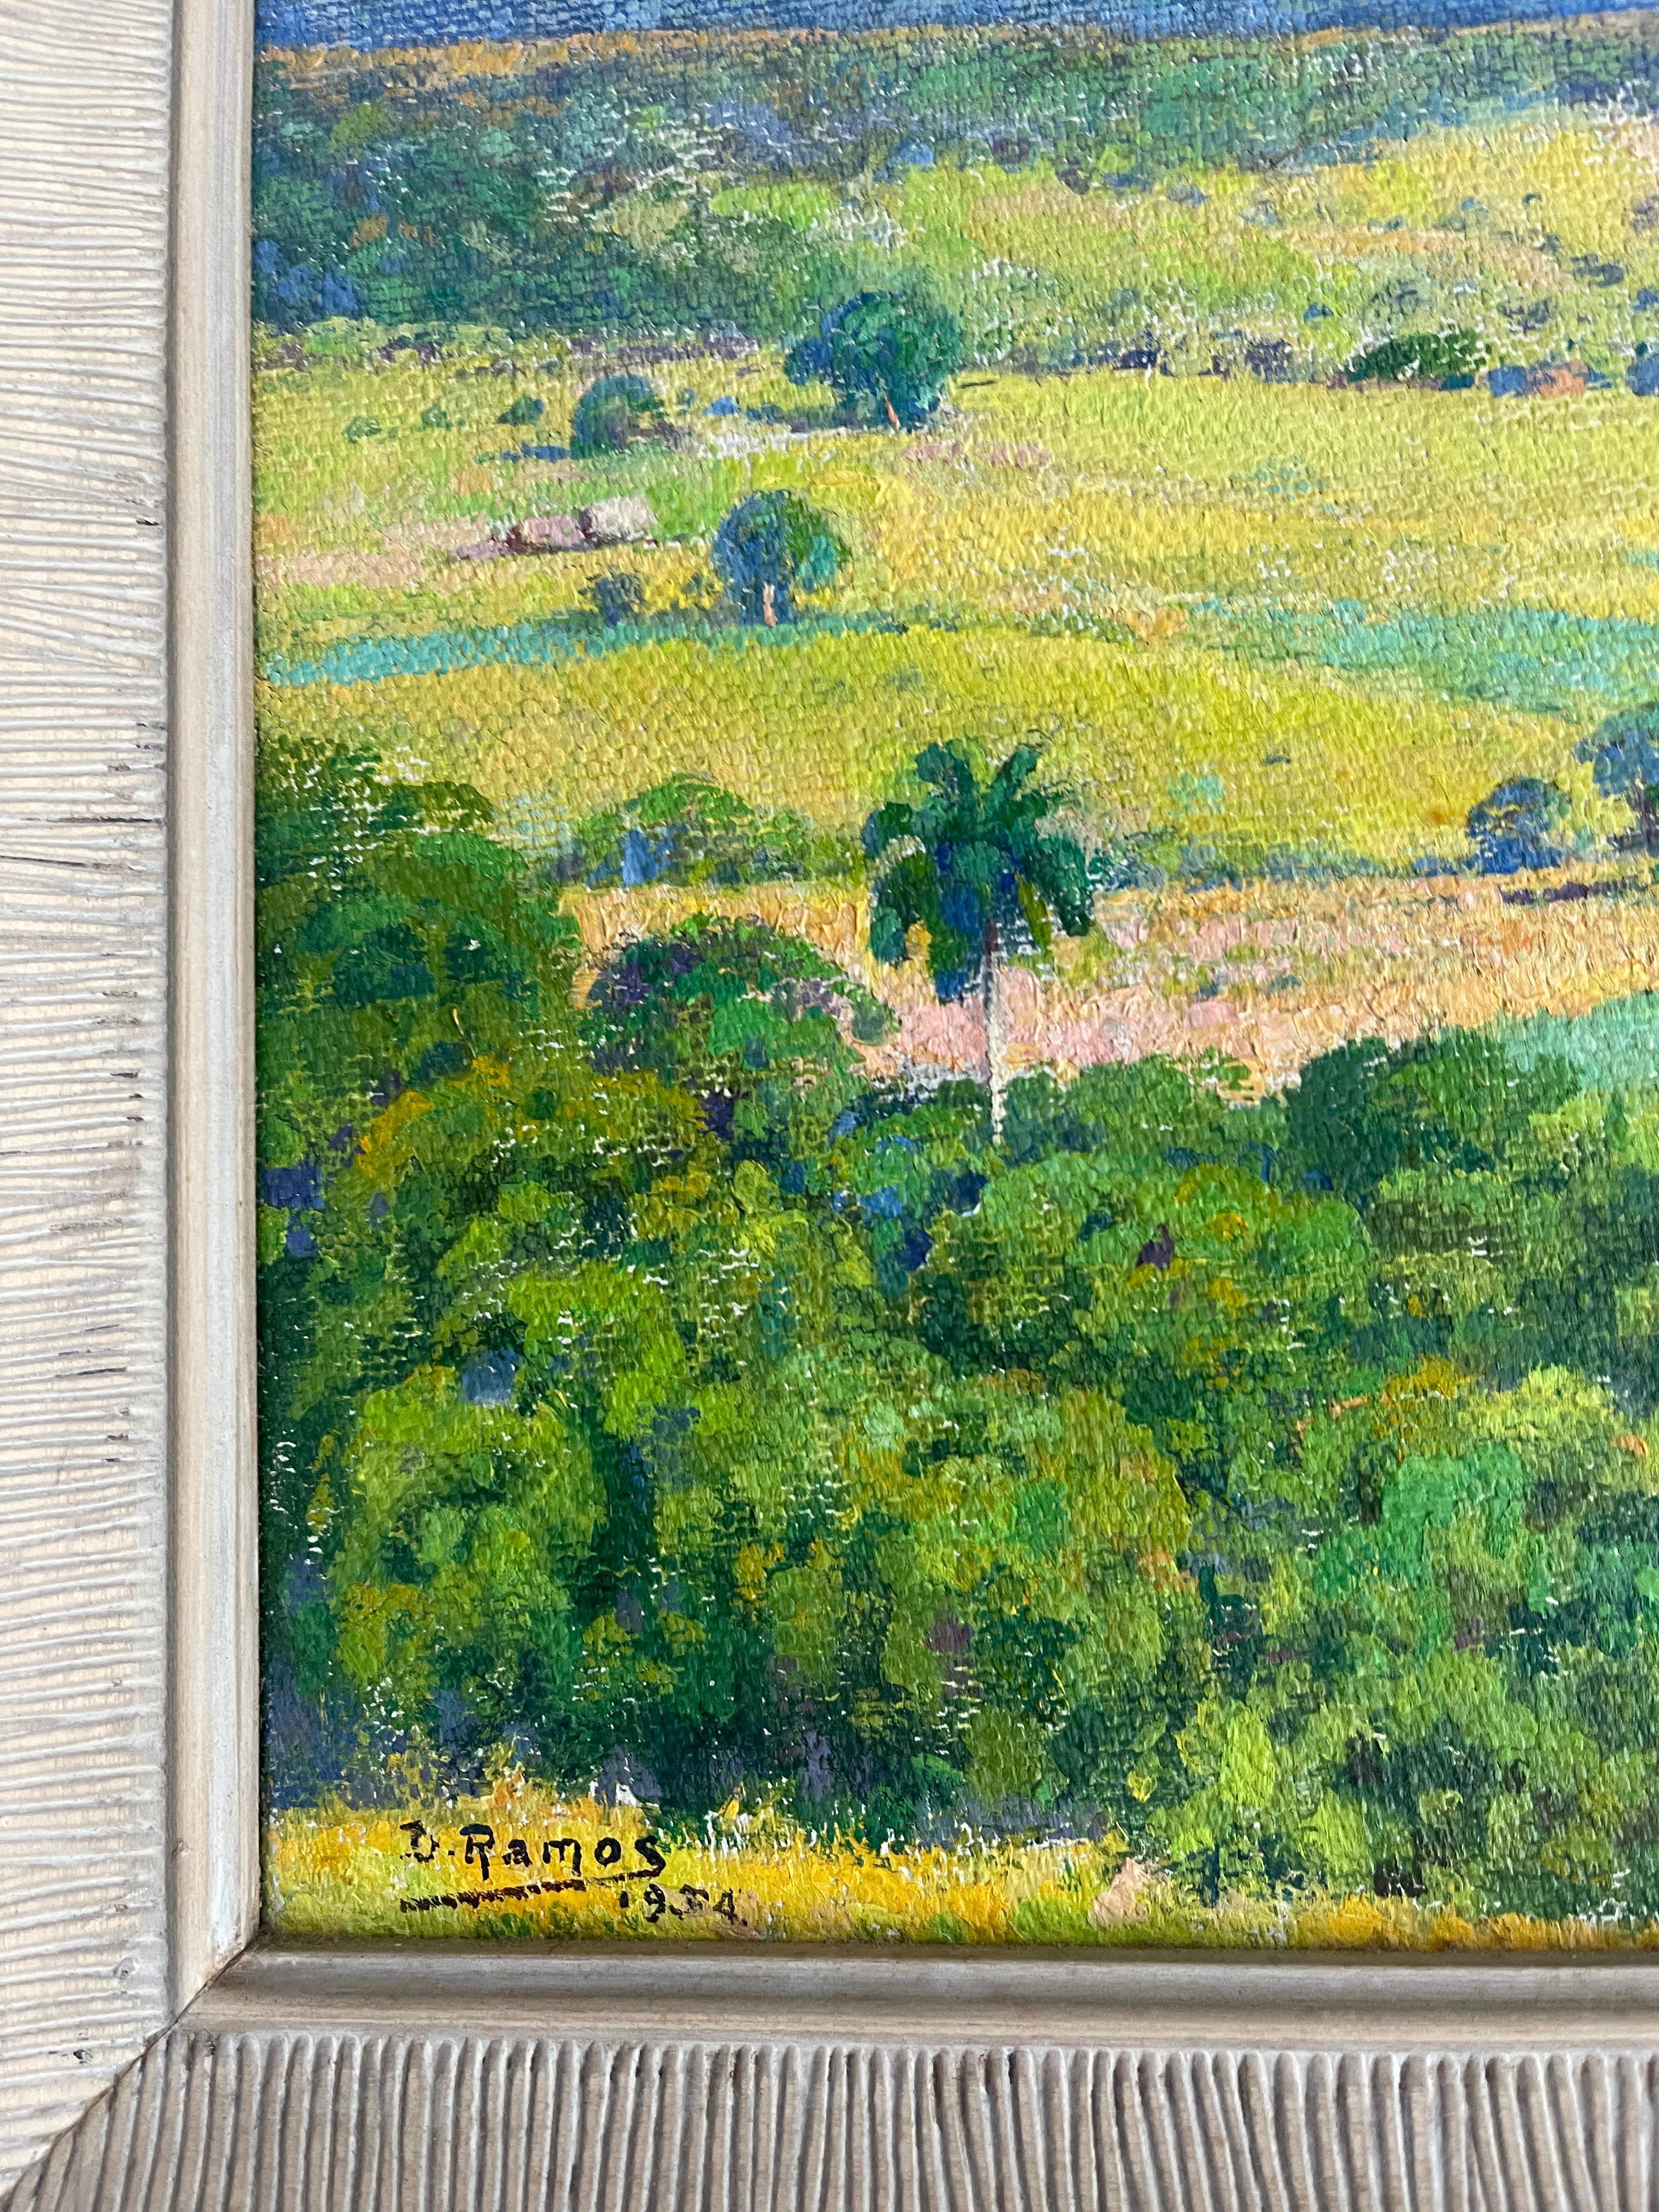 cuban landscape paintings